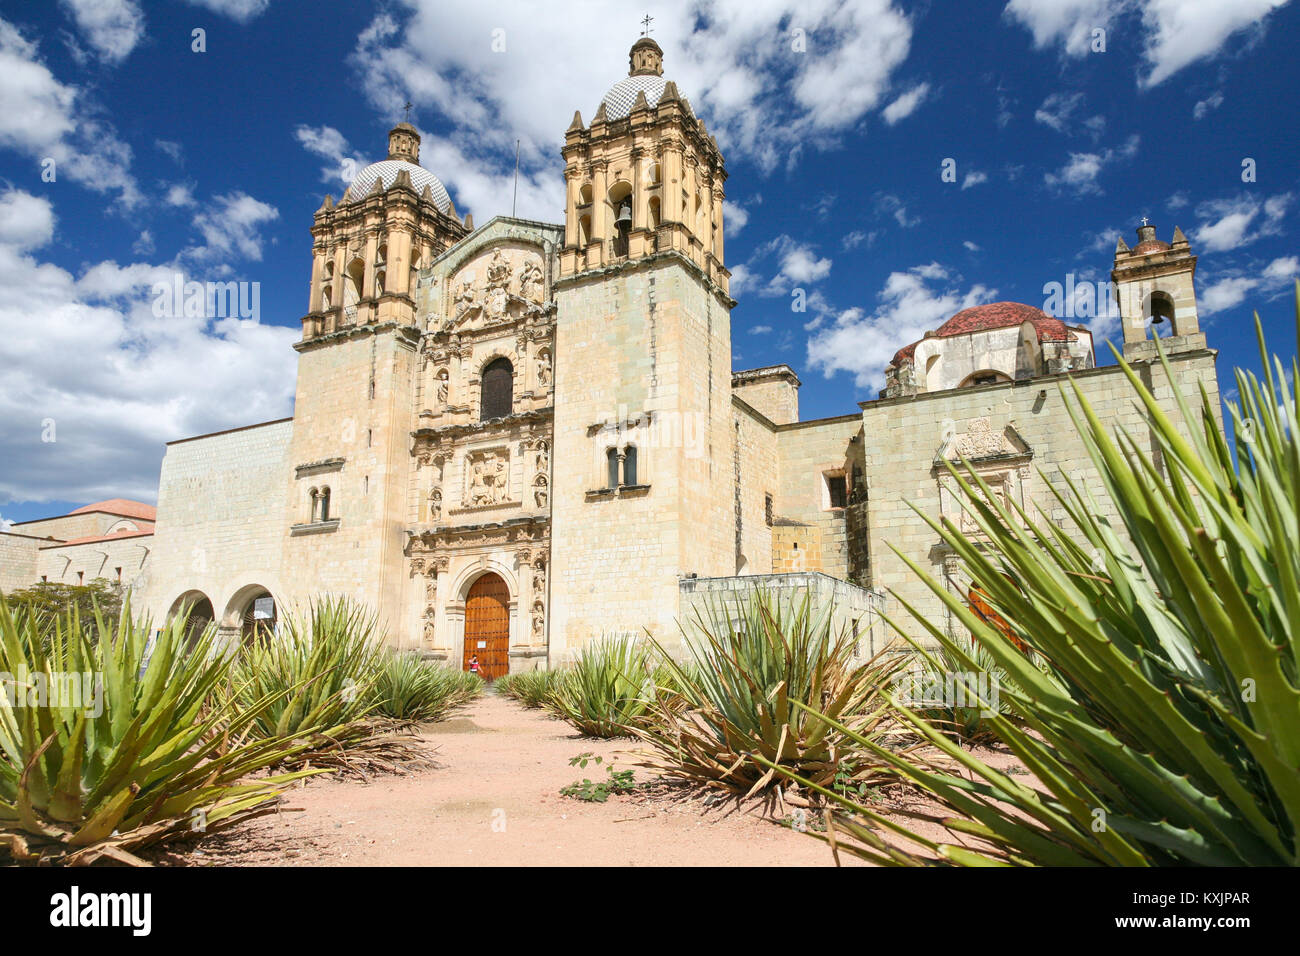 Facade of the Church of Santo Domingo de Guzman in Oaxaca, Mexico Stock Photo